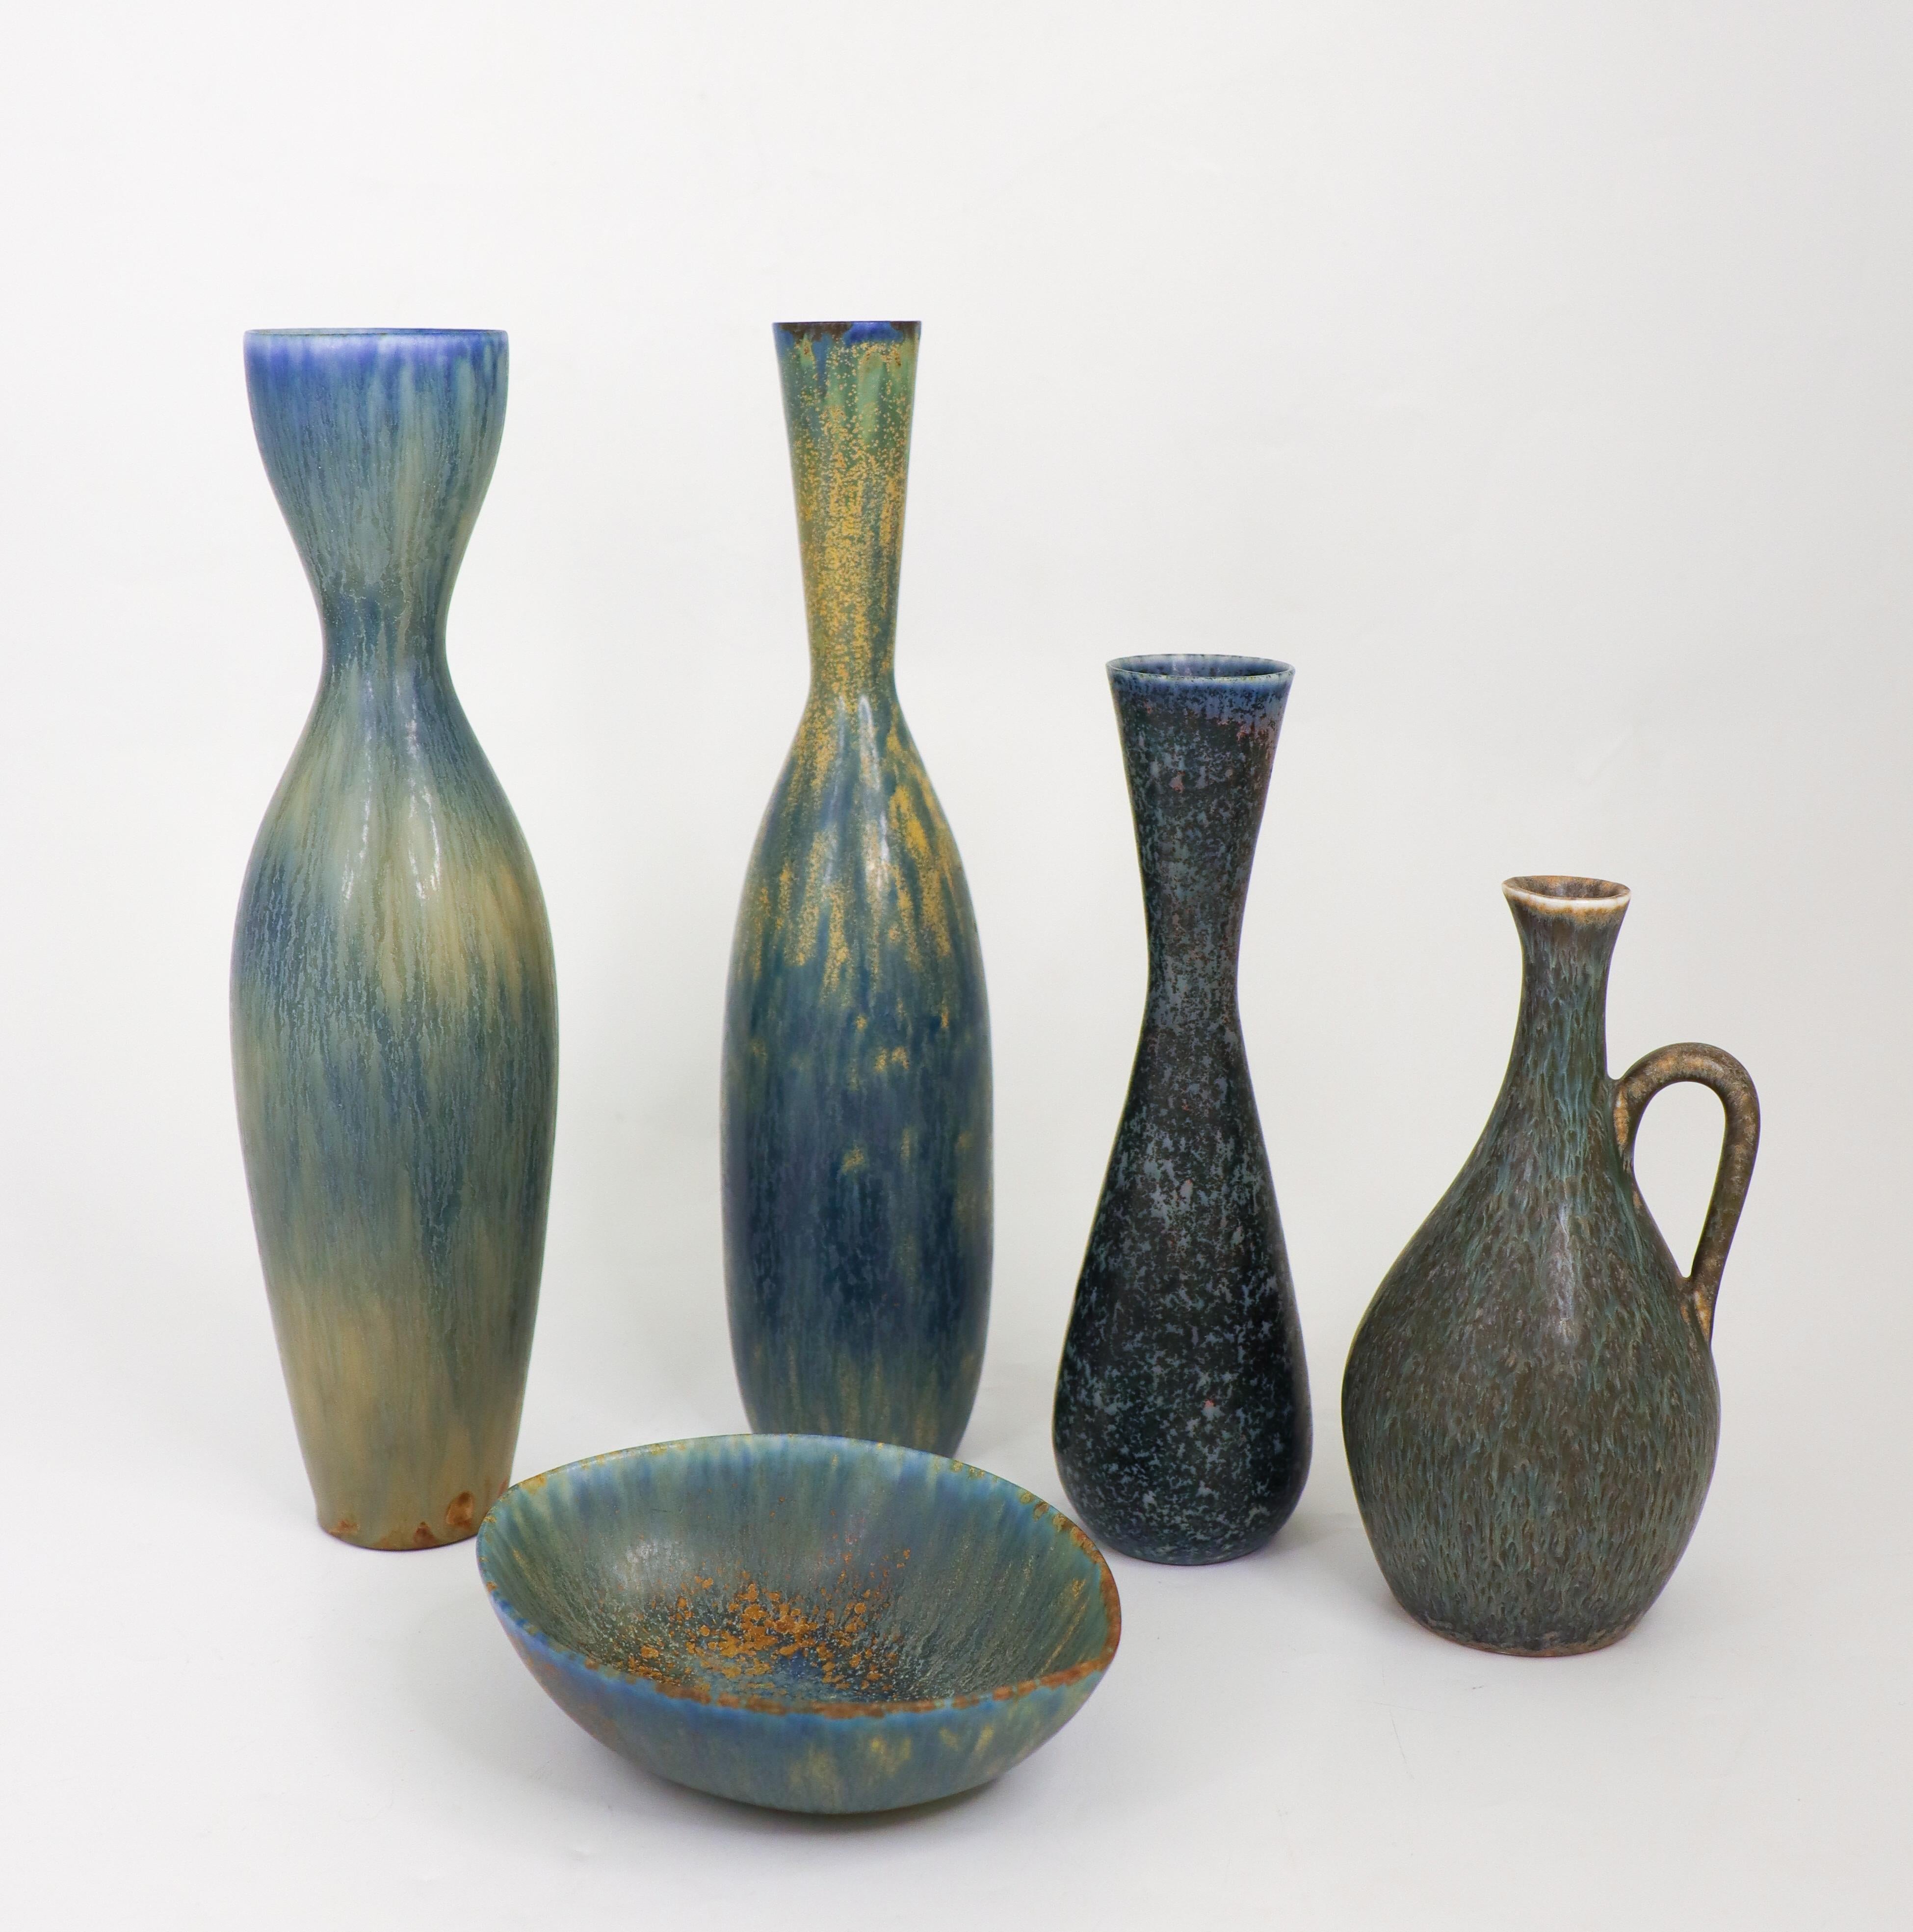 Eine Gruppe von vier Vasen und einer Schale mit beeindruckenden Glasuren, entworfen von Carl-Harry Stålhane in den 1950er Jahren in Rörstrand. Die Vasen sind zwischen  16,5 - 28 cm hoch und in ausgezeichnetem Zustand. Die Schale hat einen